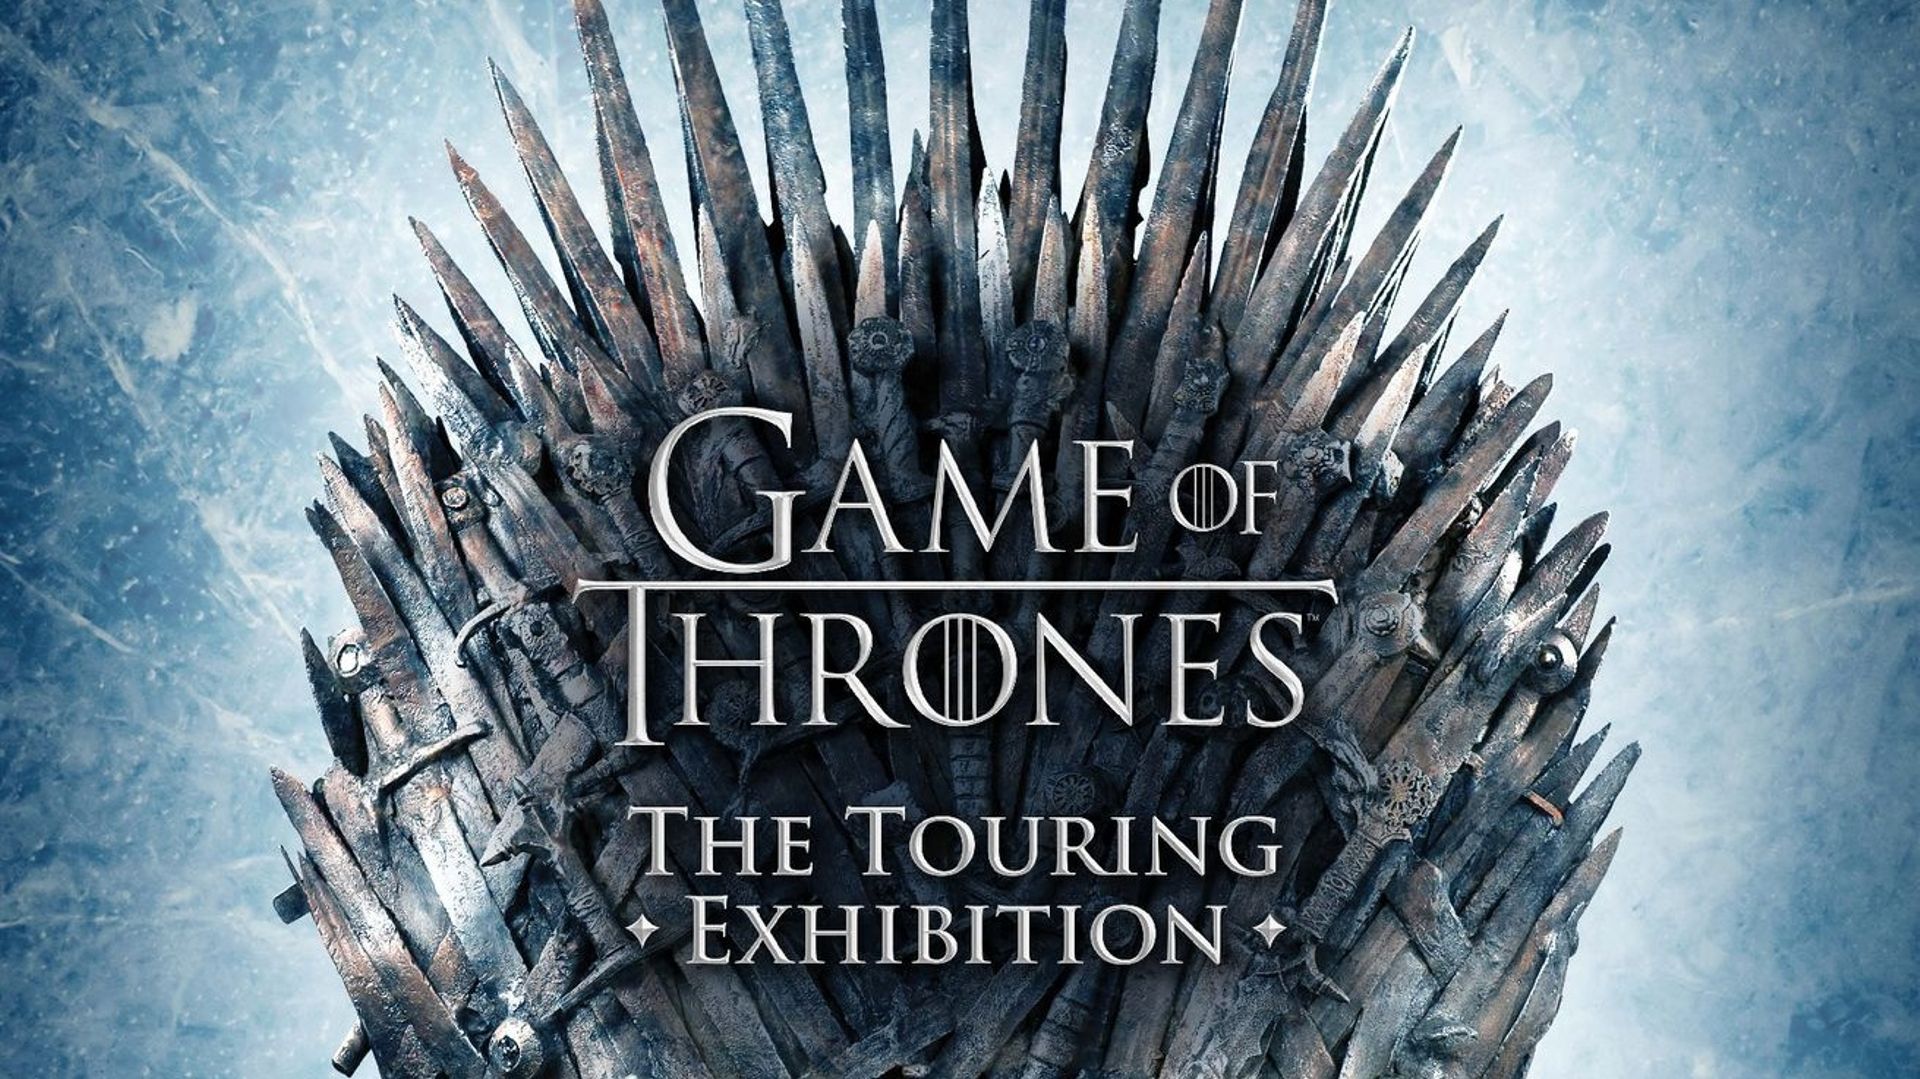 La série "Game of Thrones" a remporté un total de 38 Emmy Awards depuis sa création en 2011